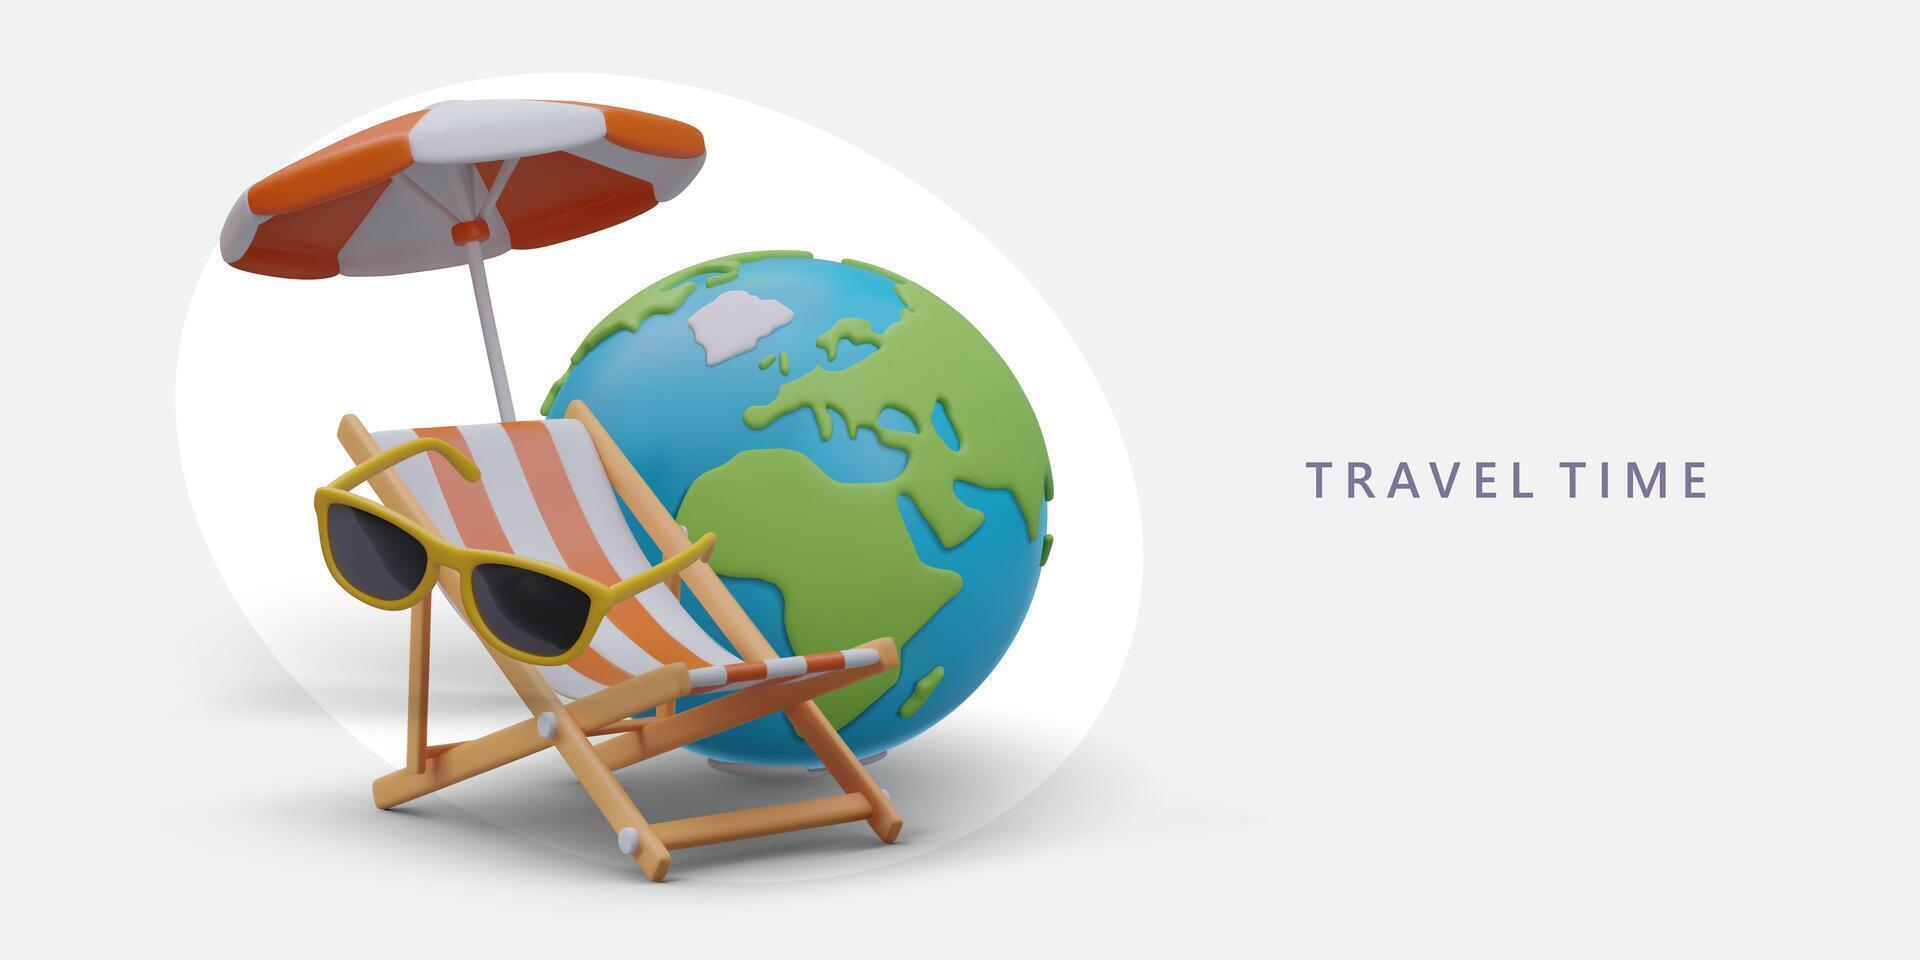 géant 3d globe, plage parapluie, des lunettes de soleil, plate-forme chaise. Voyage un d modèle dans dessin animé style vecteur